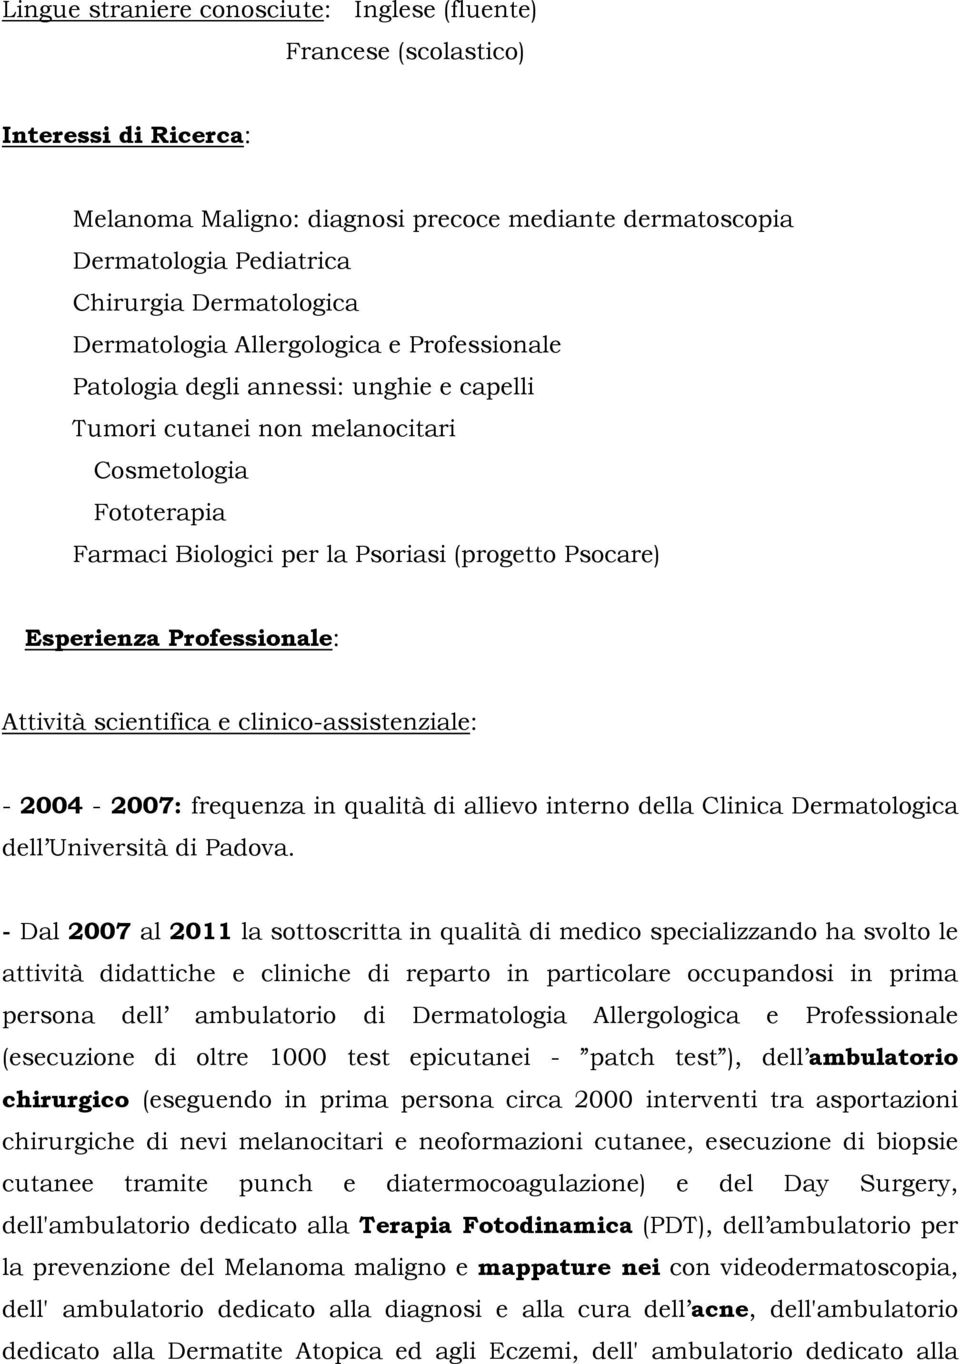 scientifica e clinic-assistenziale: - 2004-2007: frequenza in qualità di alliev intern della Clinica Dermatlgica dell Università di Padva.